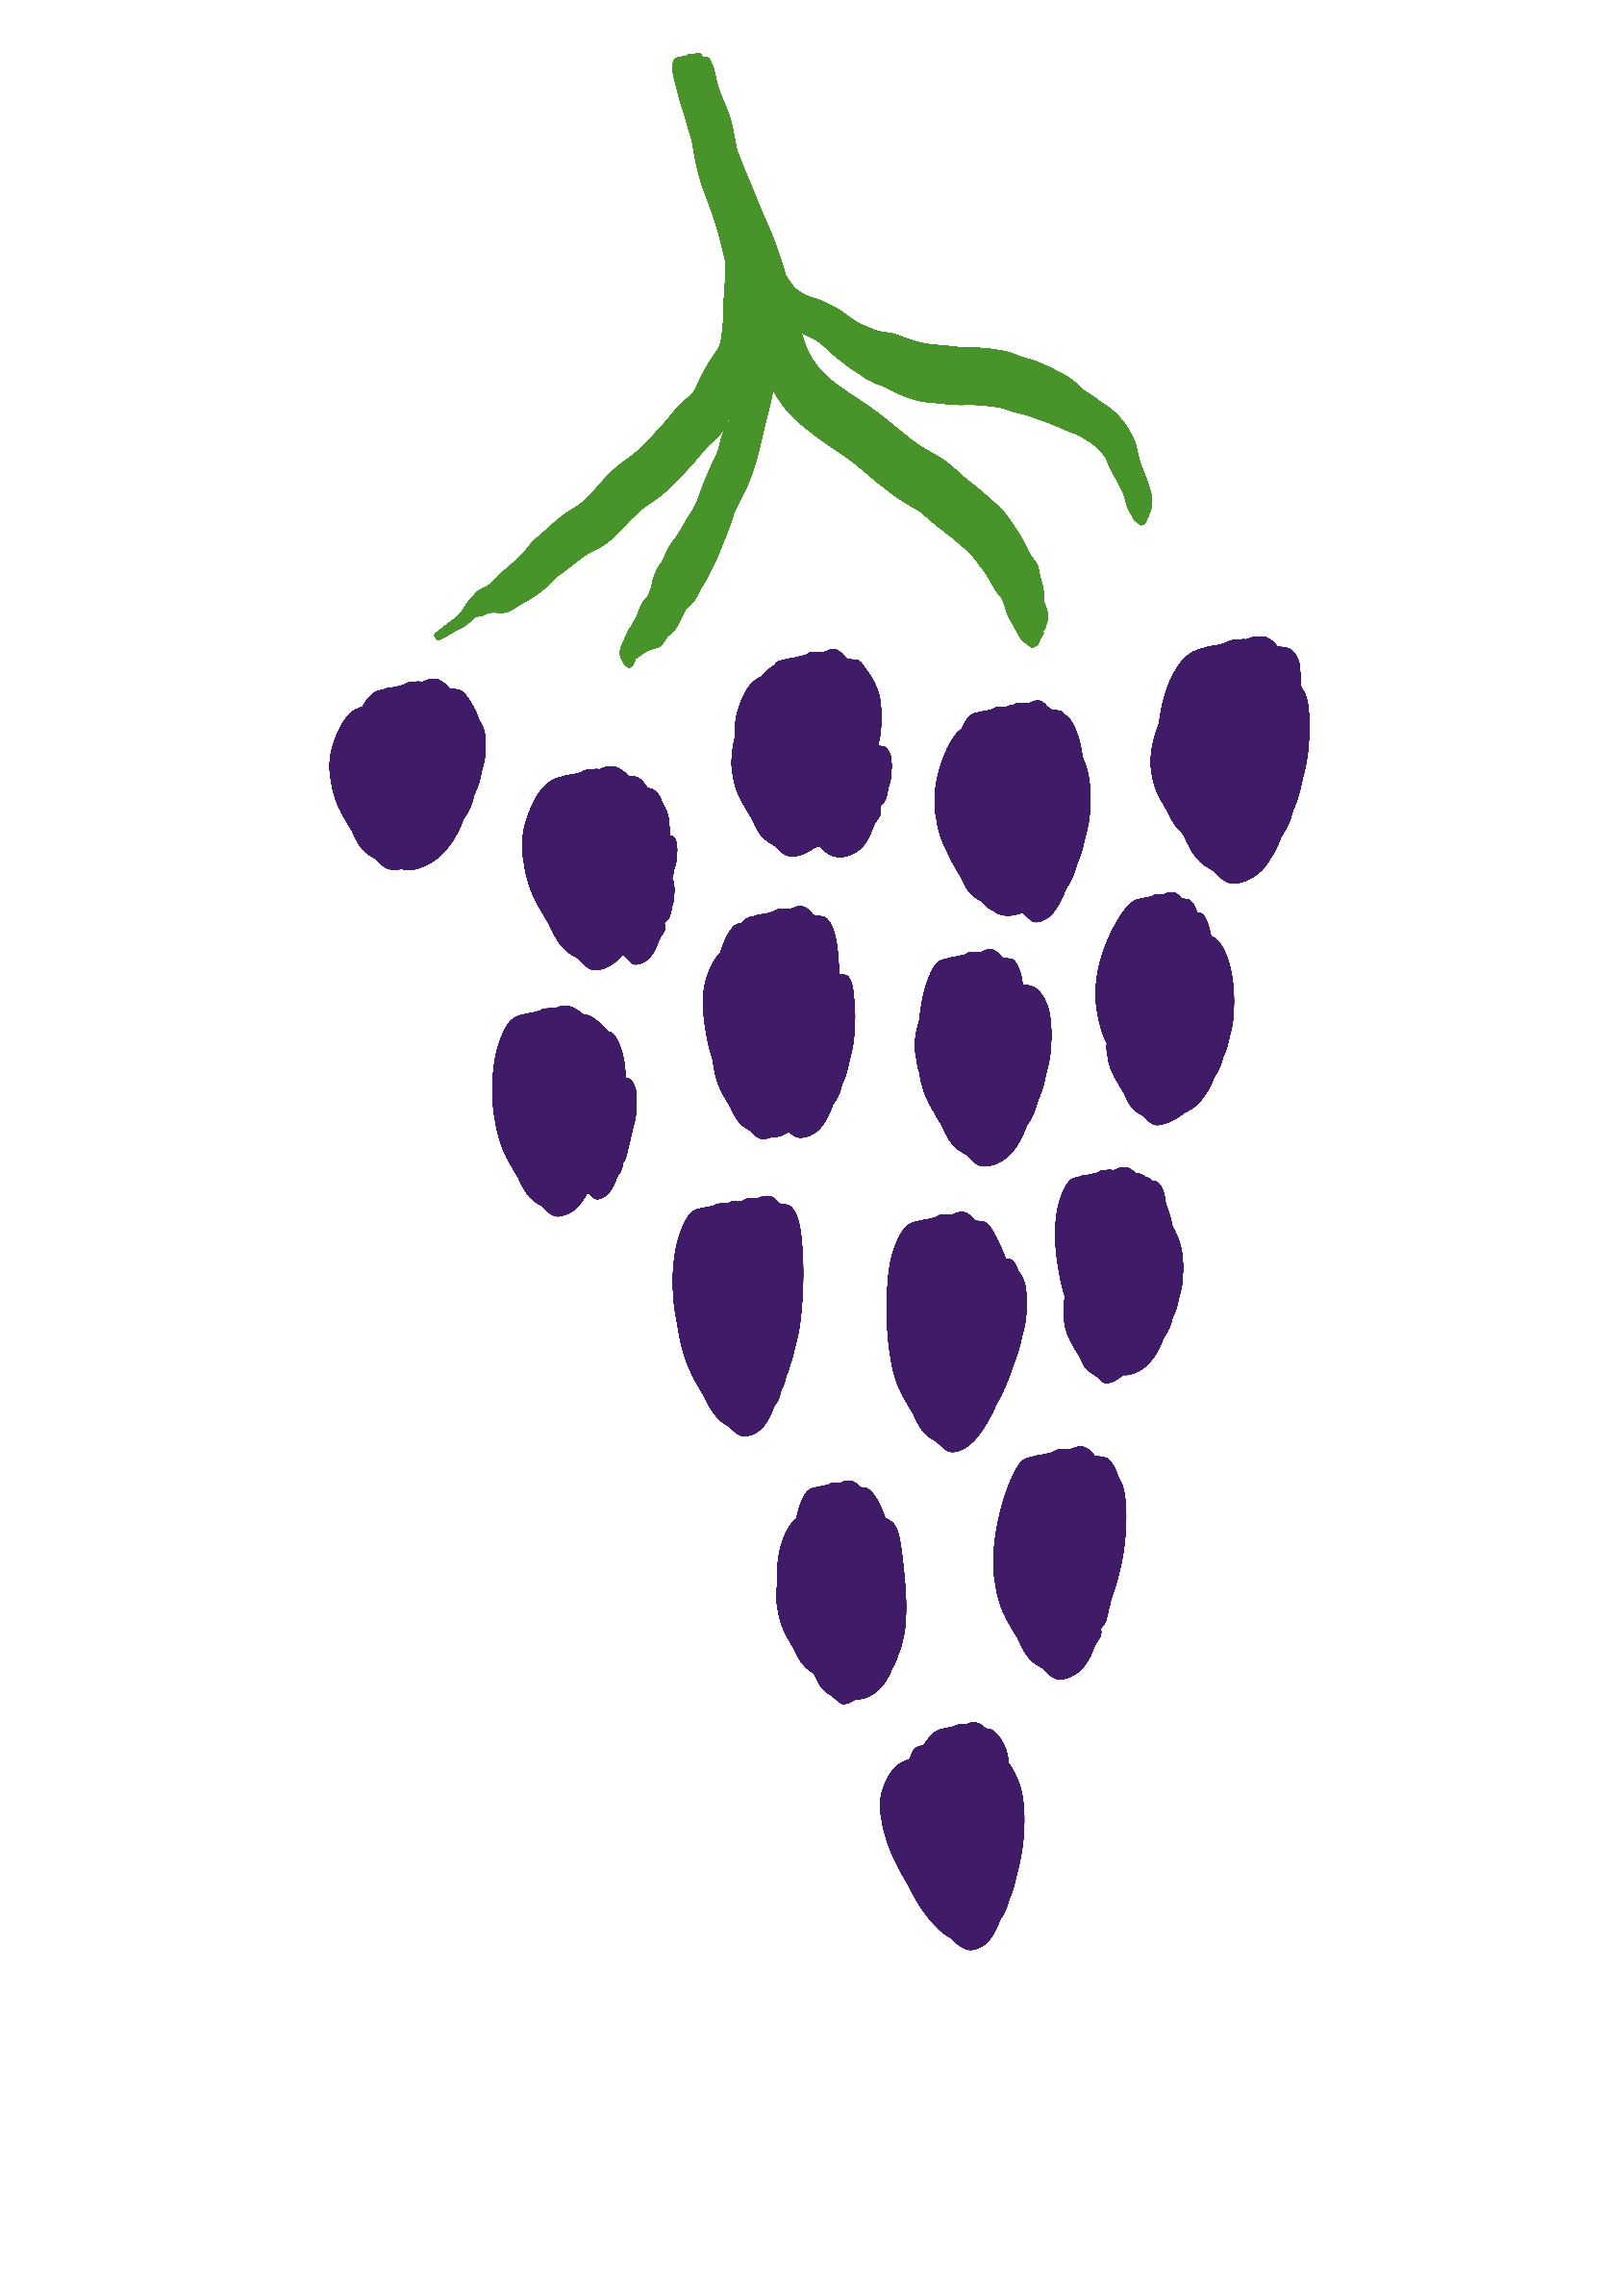 drawing of grapes